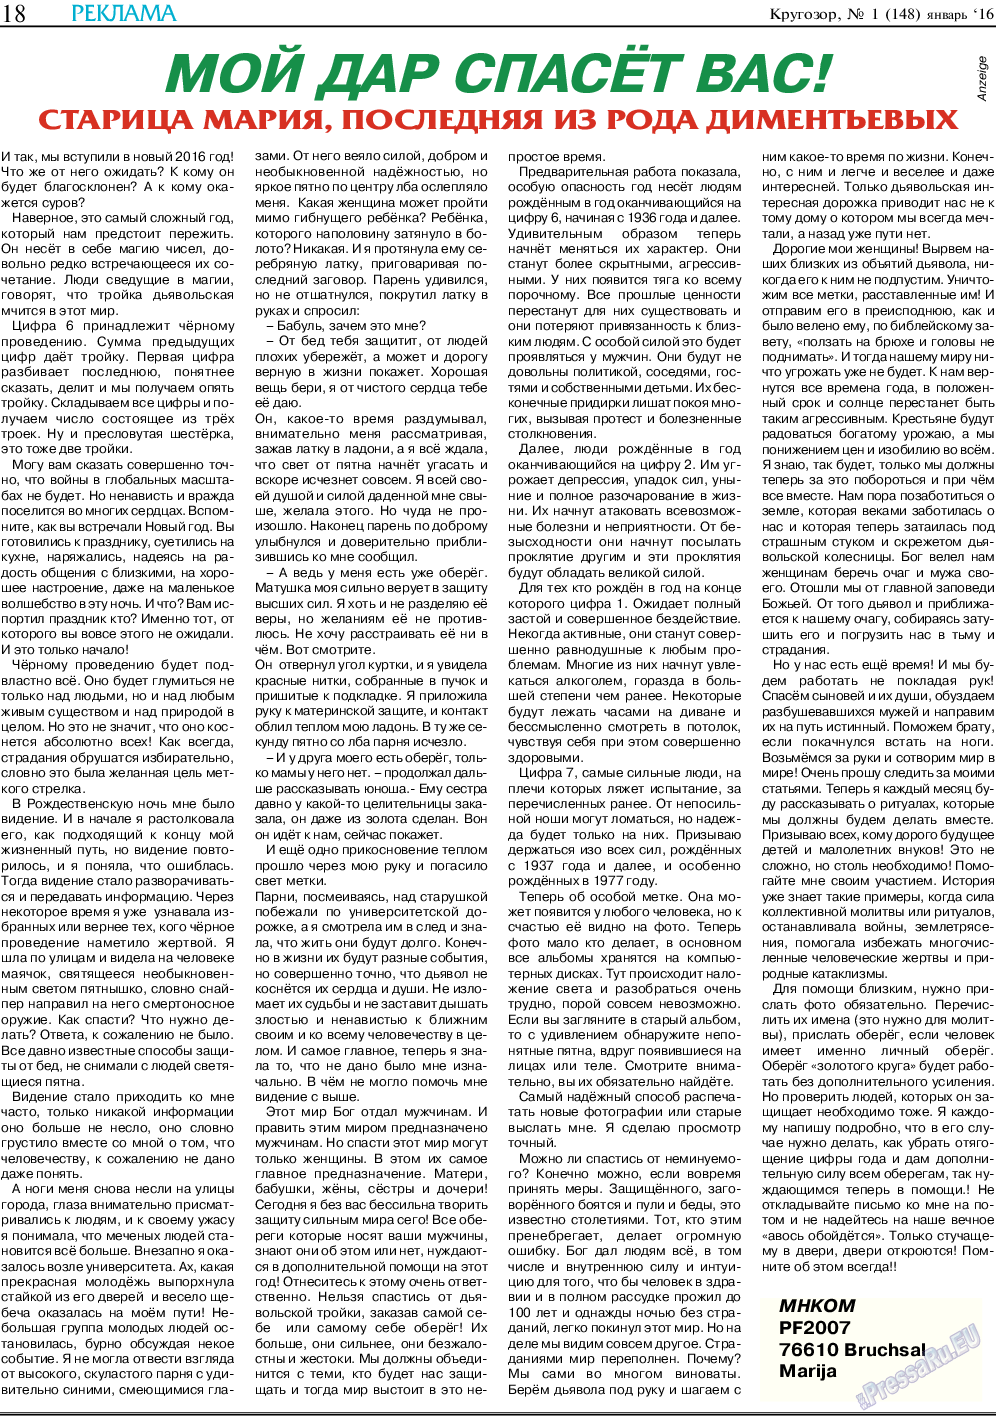 Кругозор, газета. 2016 №1 стр.18